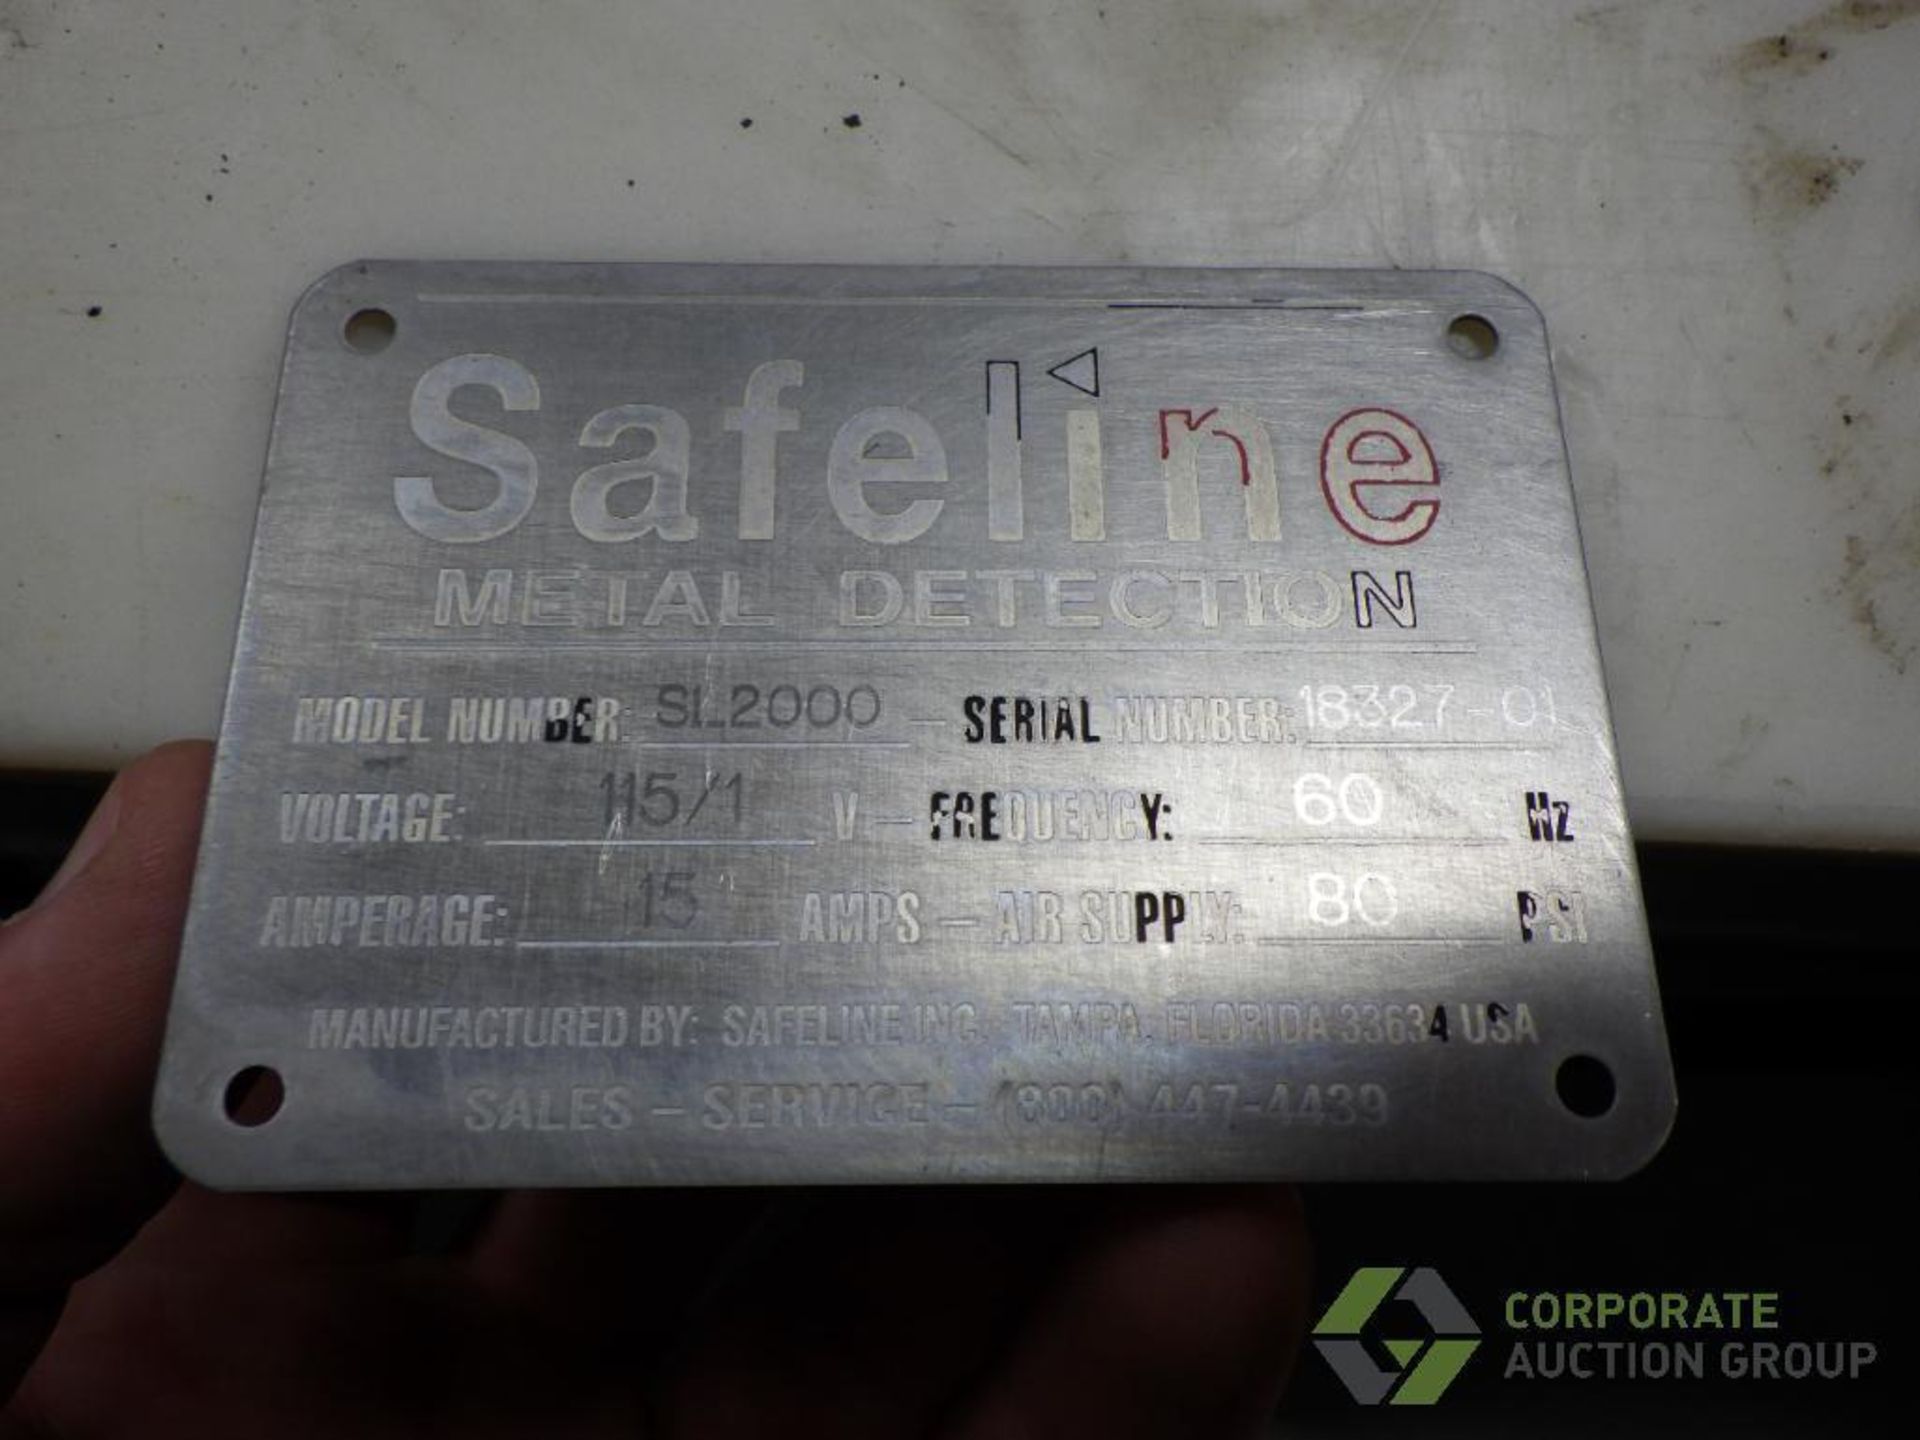 Safeline metal detector - Image 16 of 18